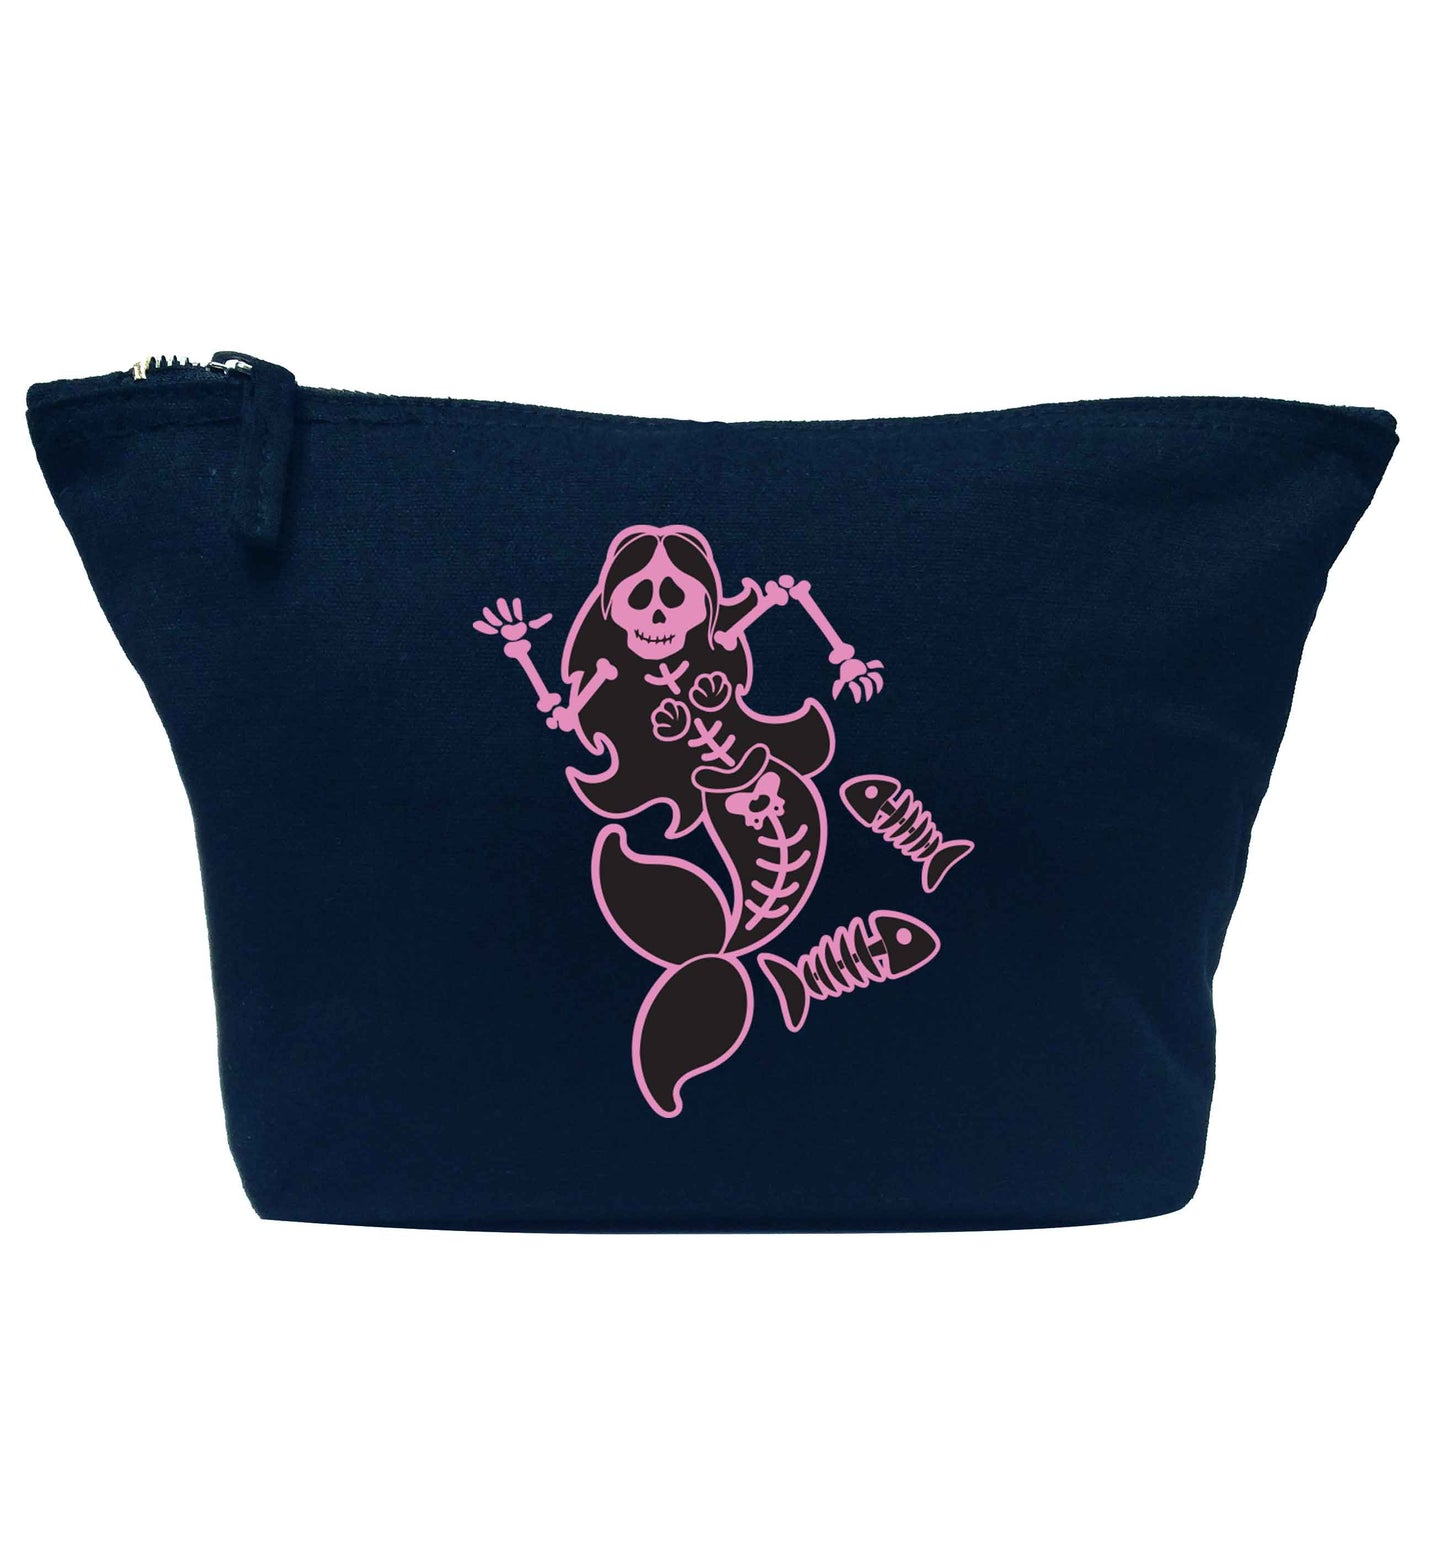 Skeleton mermaid navy makeup bag